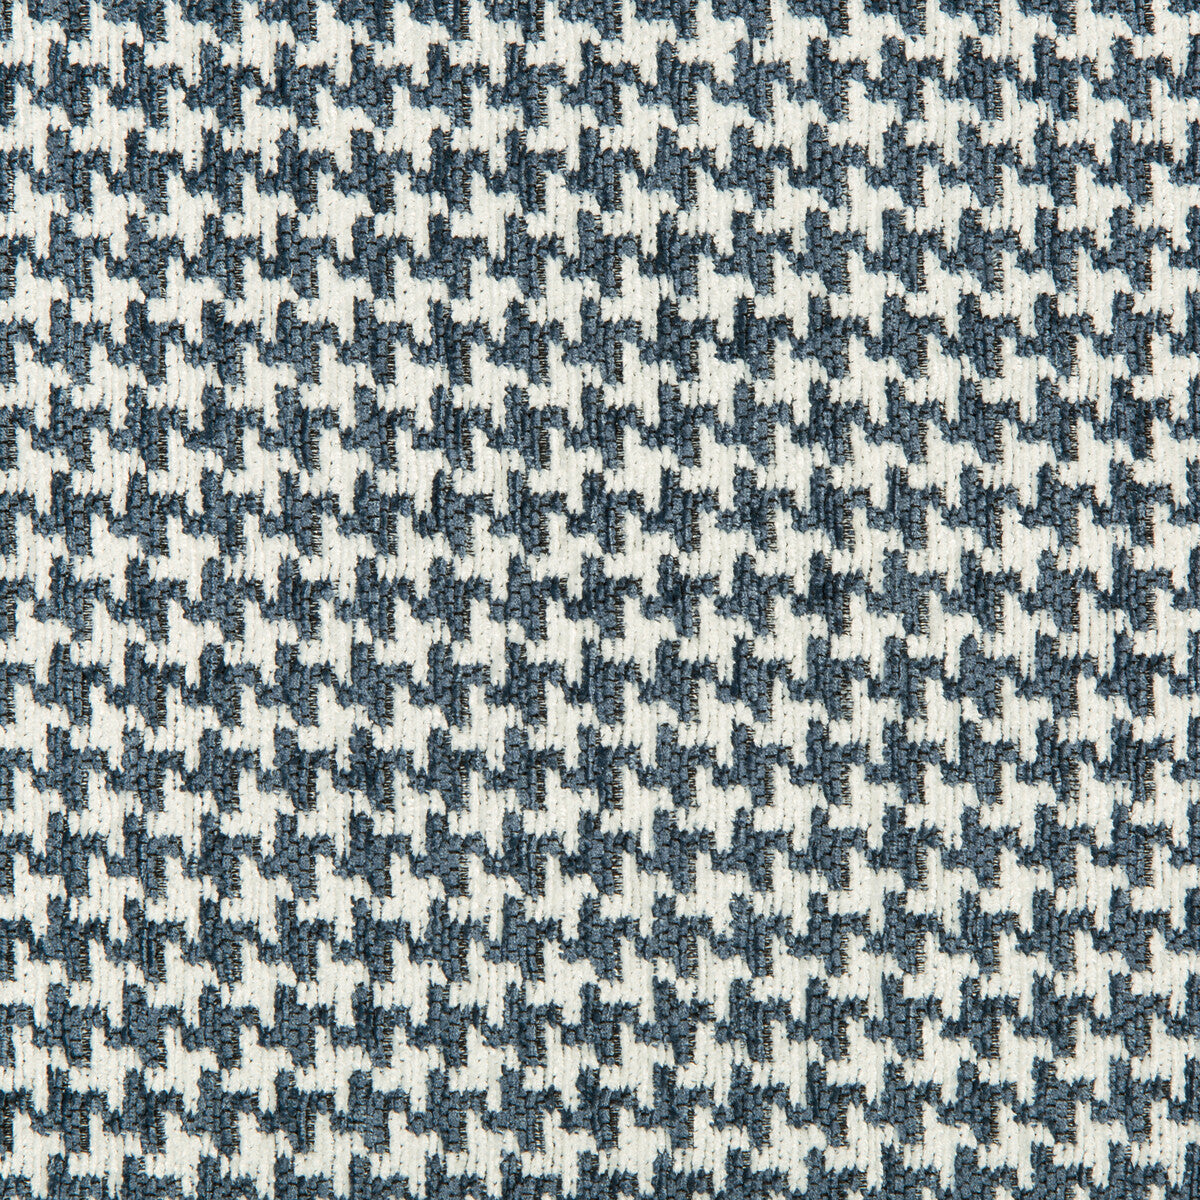 Kravet Design fabric in 35693-5 color - pattern 35693.5.0 - by Kravet Design